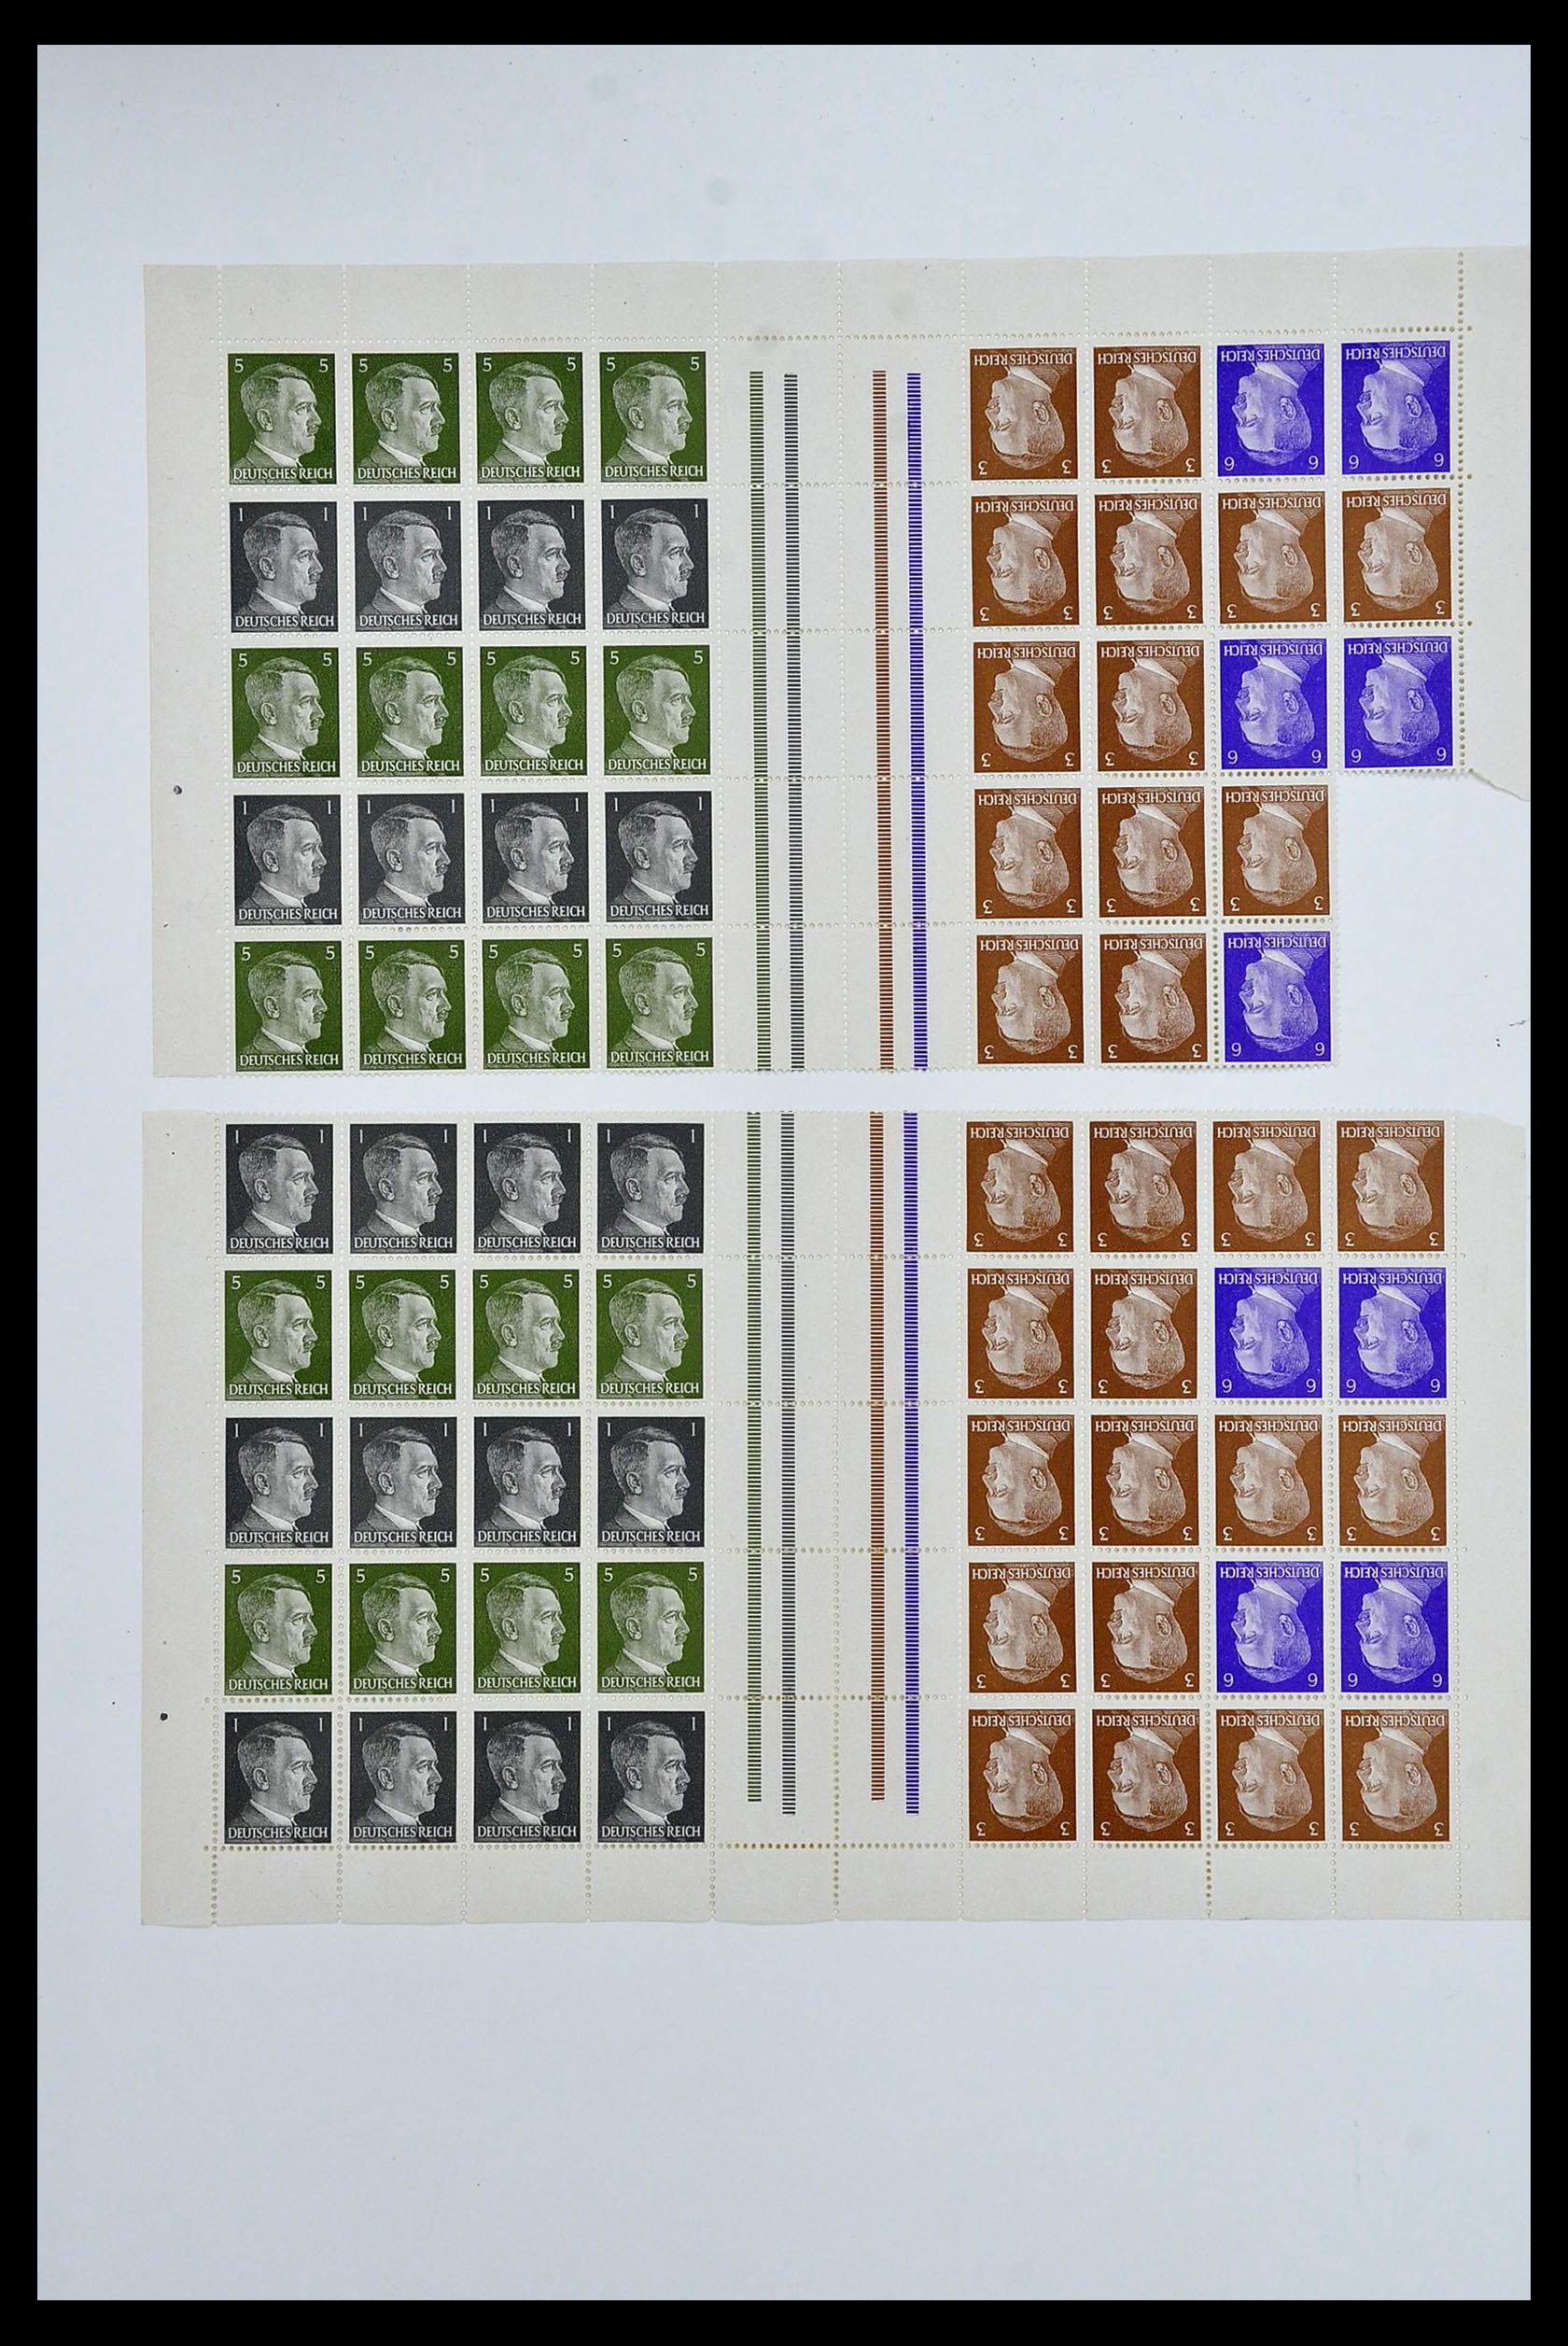 34164 072 - Stamp collection 34164 German Reich Markenheftchenbogen 1933-1942.